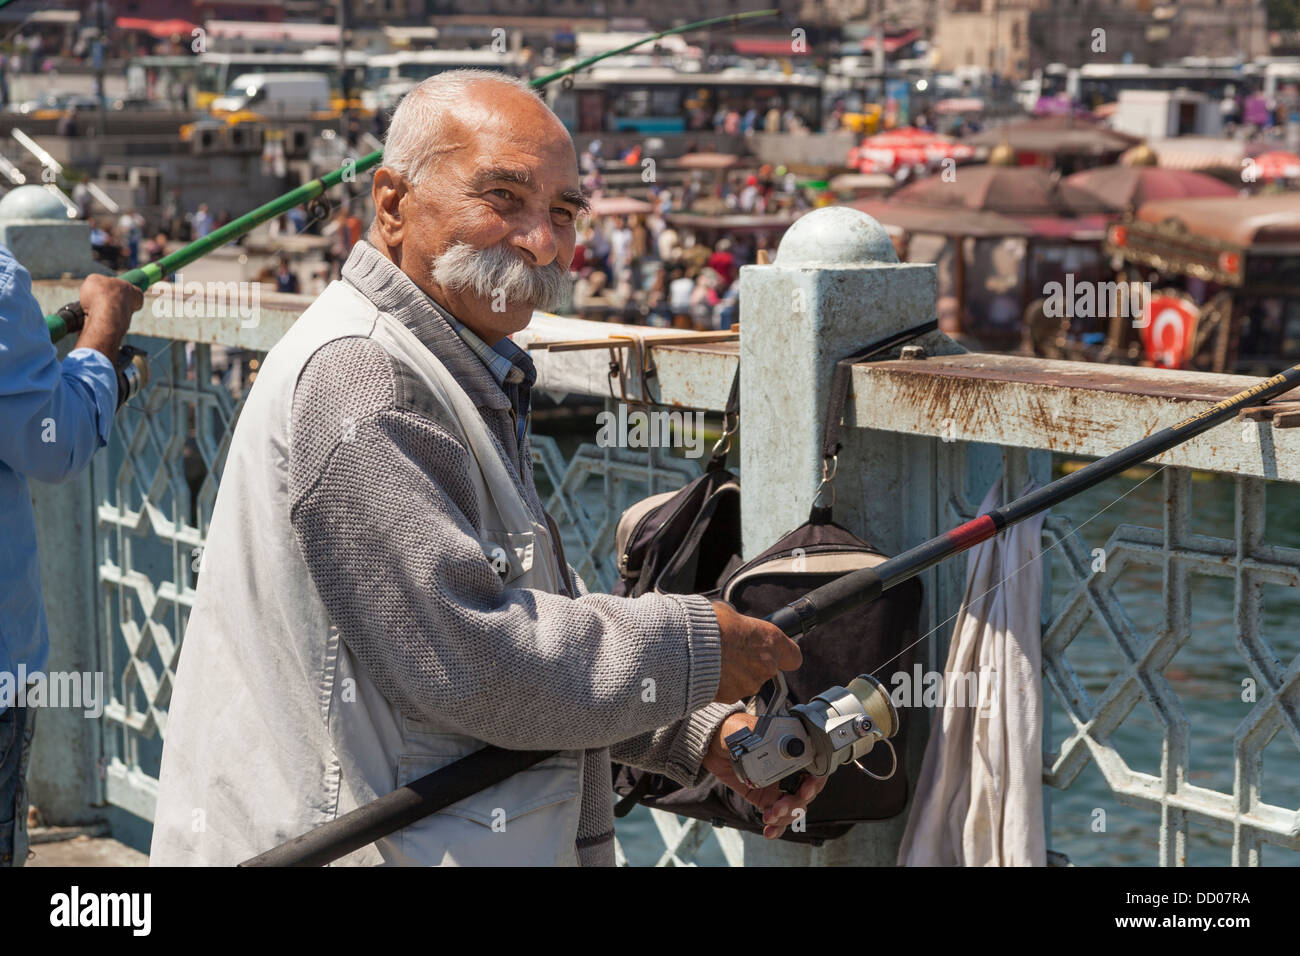 Hombre que pesca en el puente de Galata, Estambul, Turquía Foto de stock